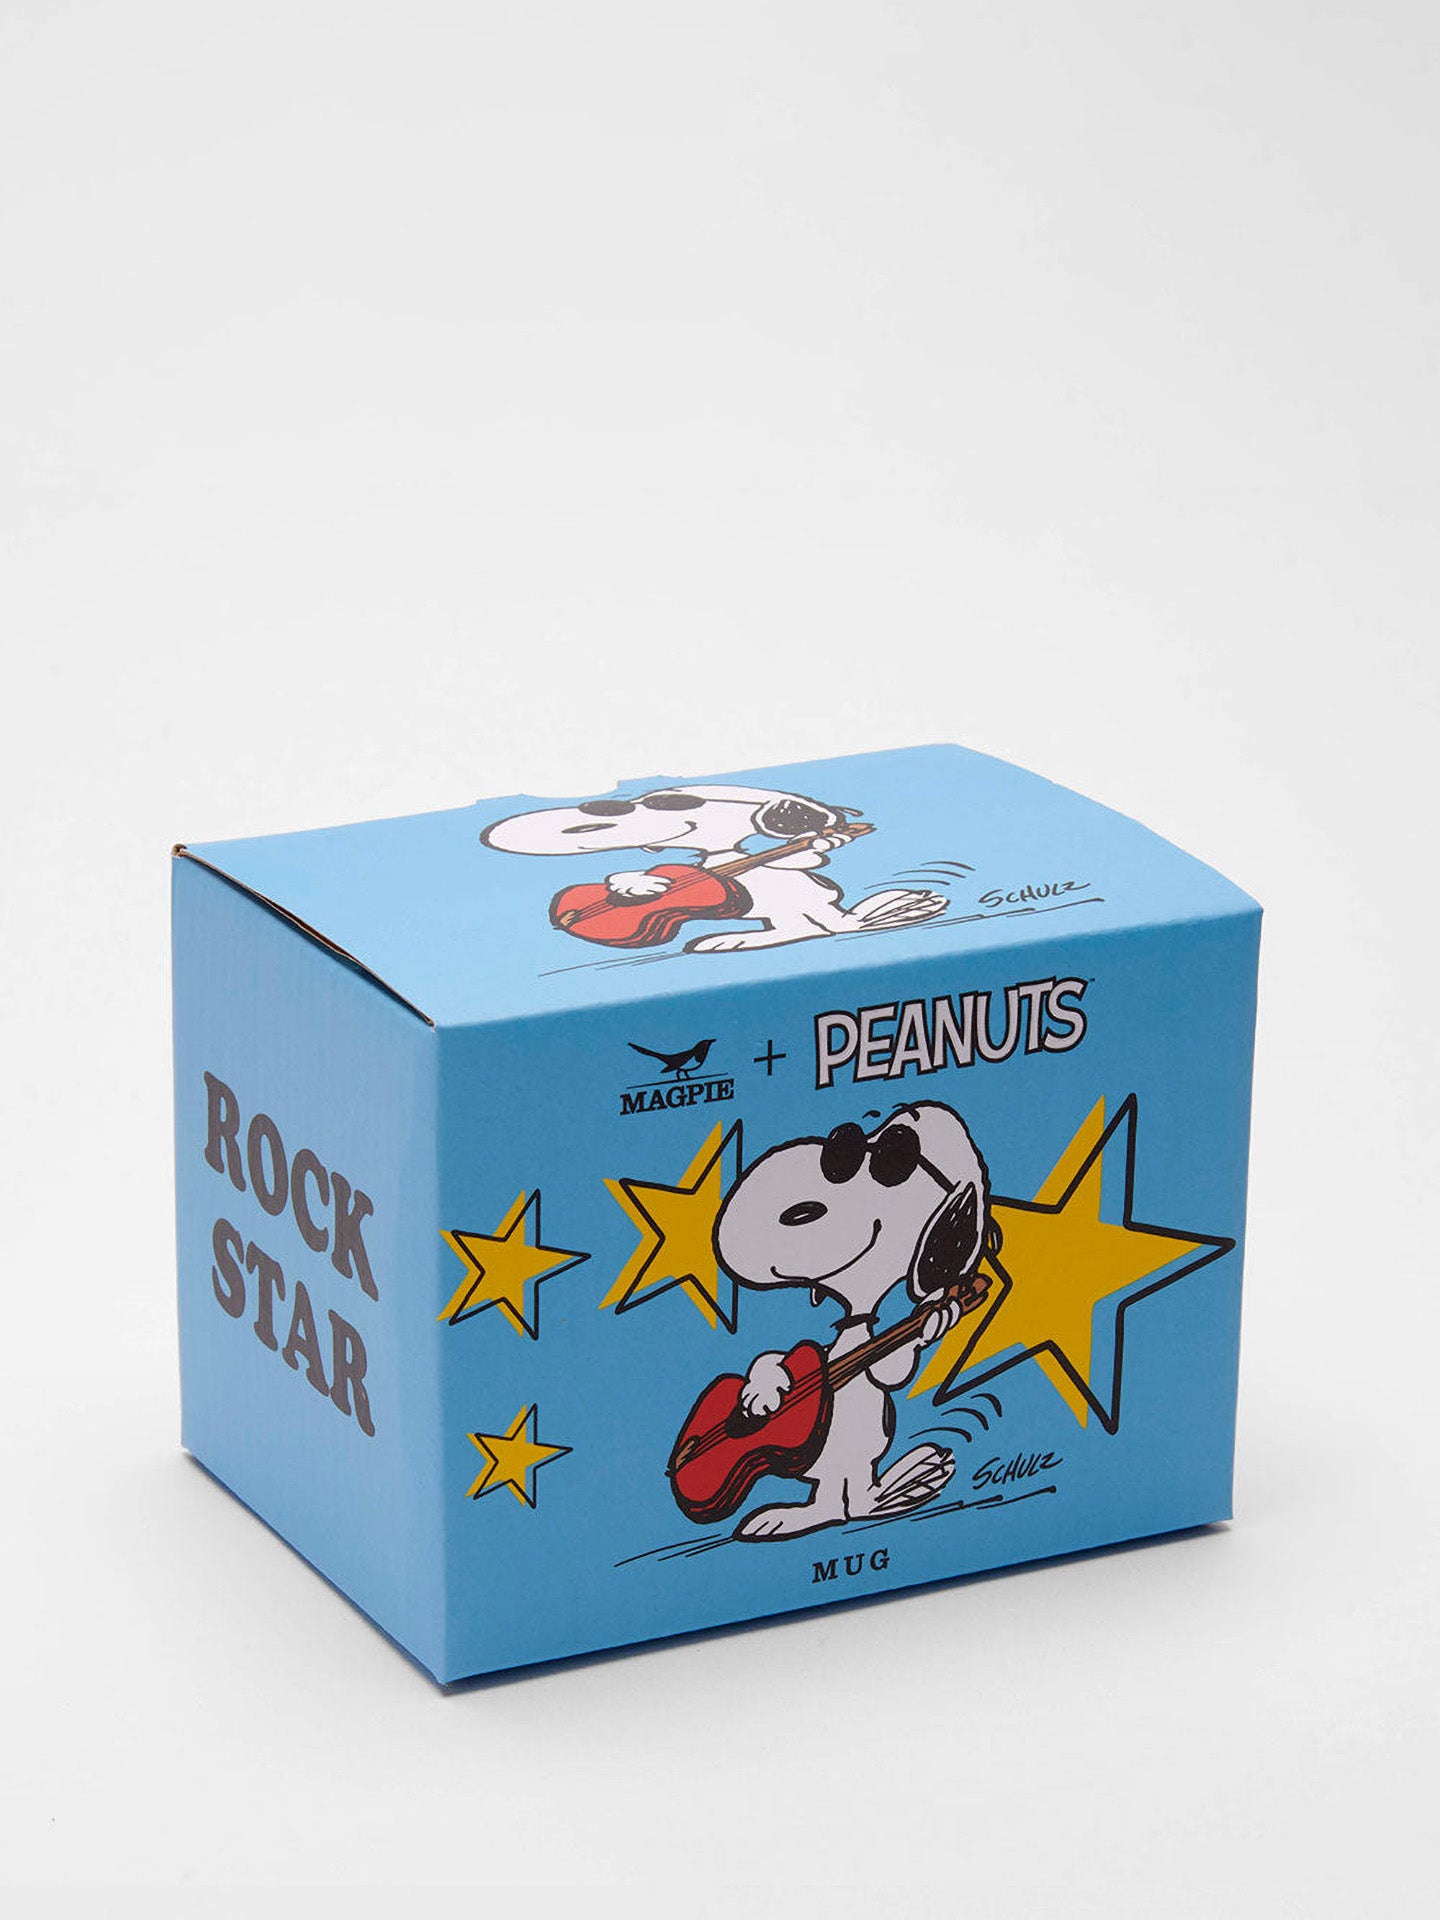 Peanuts mug, Rock Star